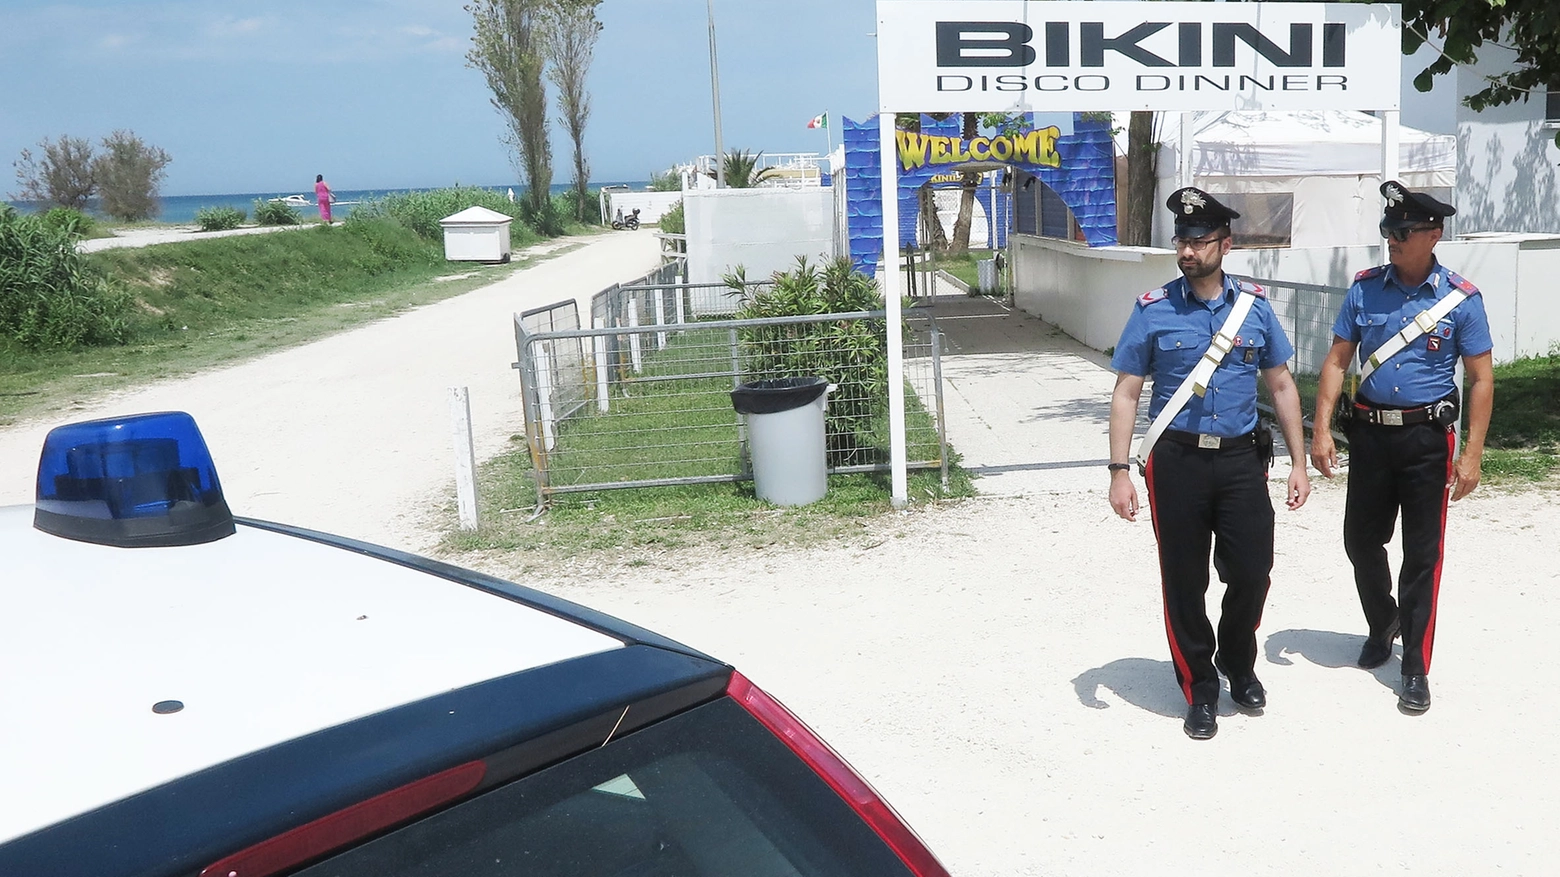 I carabinieri intervenuti dopo l'accoltellamento al Bikini (Migliorini)